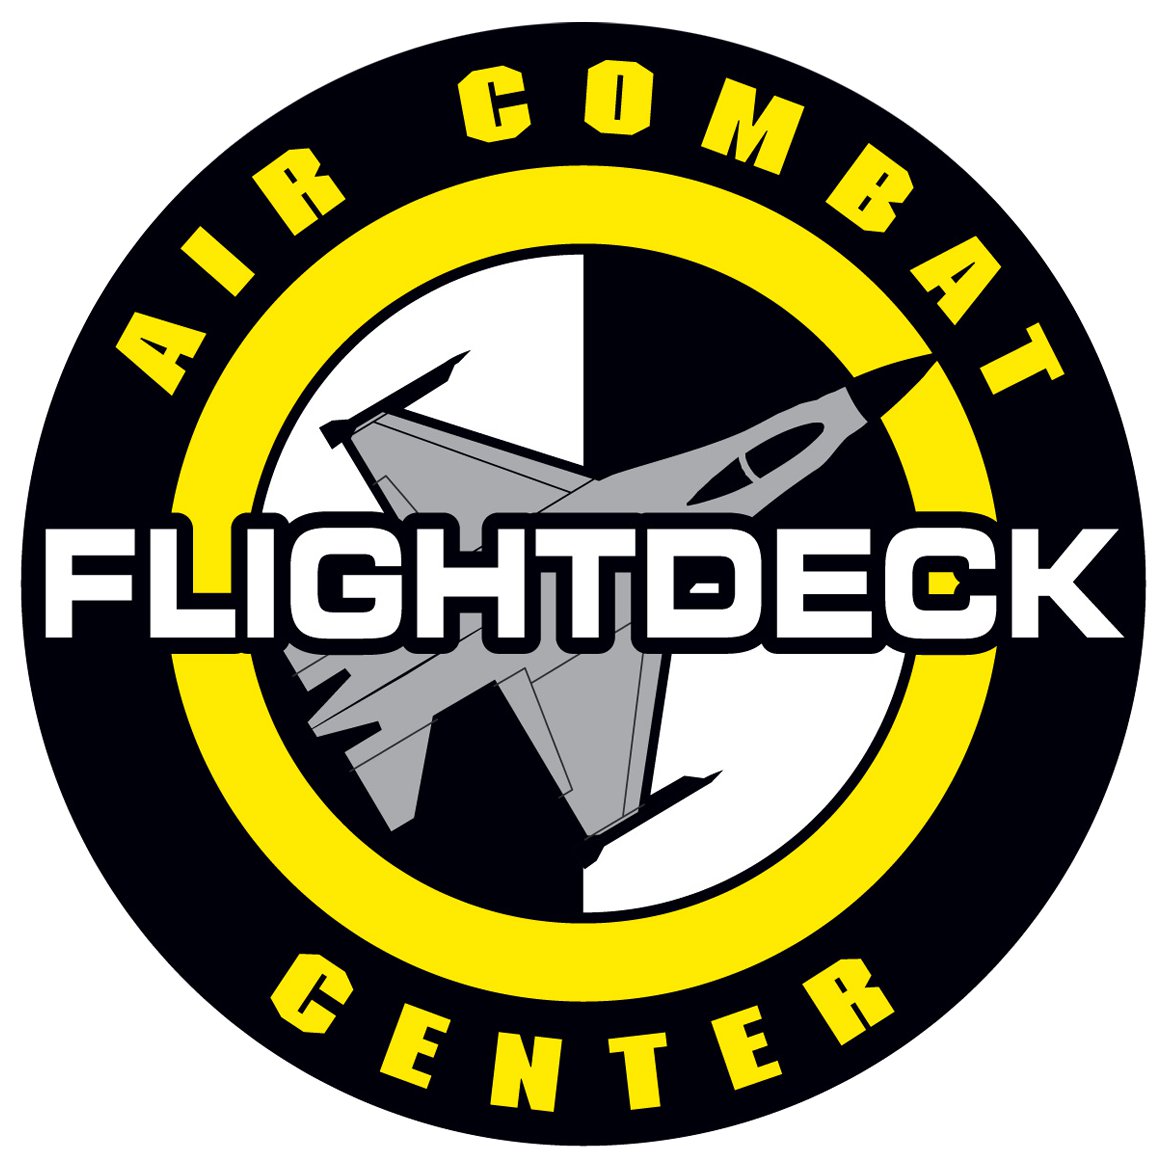 Flightdeck center Anaheim